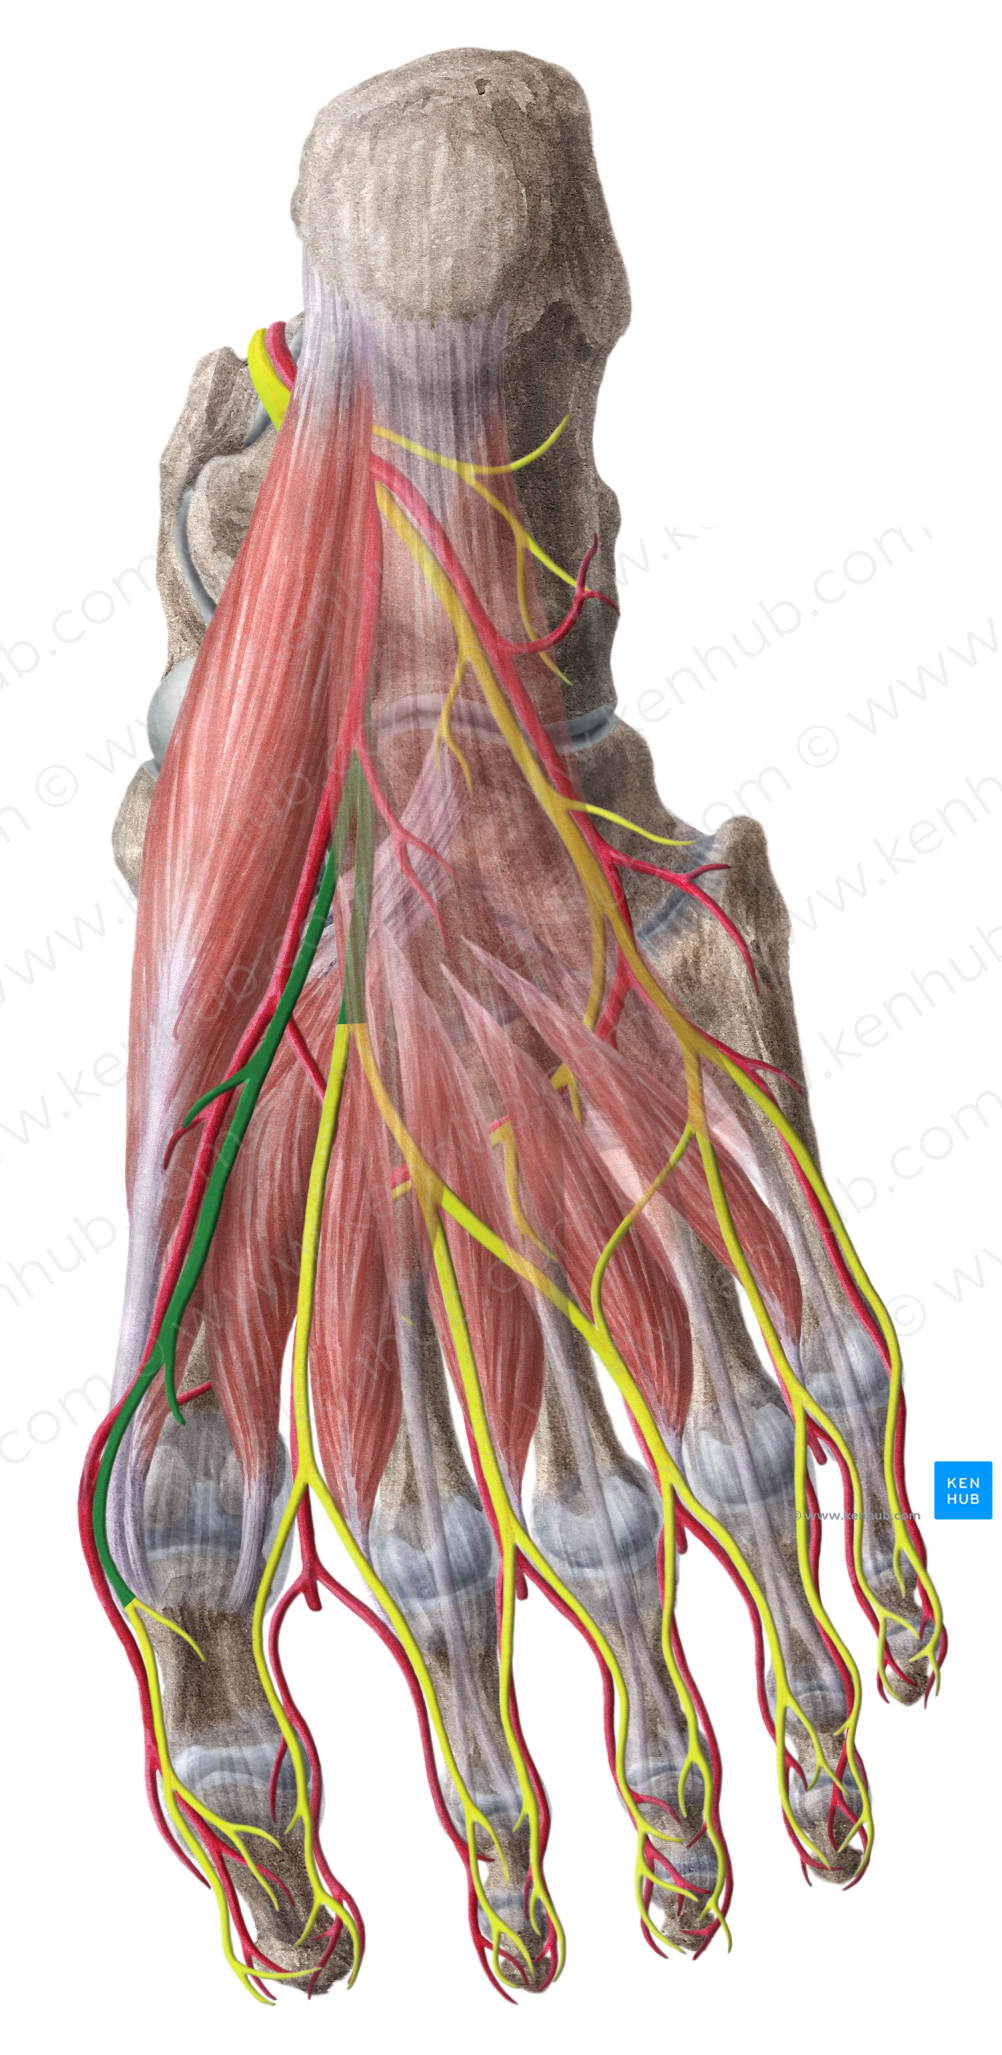 Medial plantar nerve (#6698)